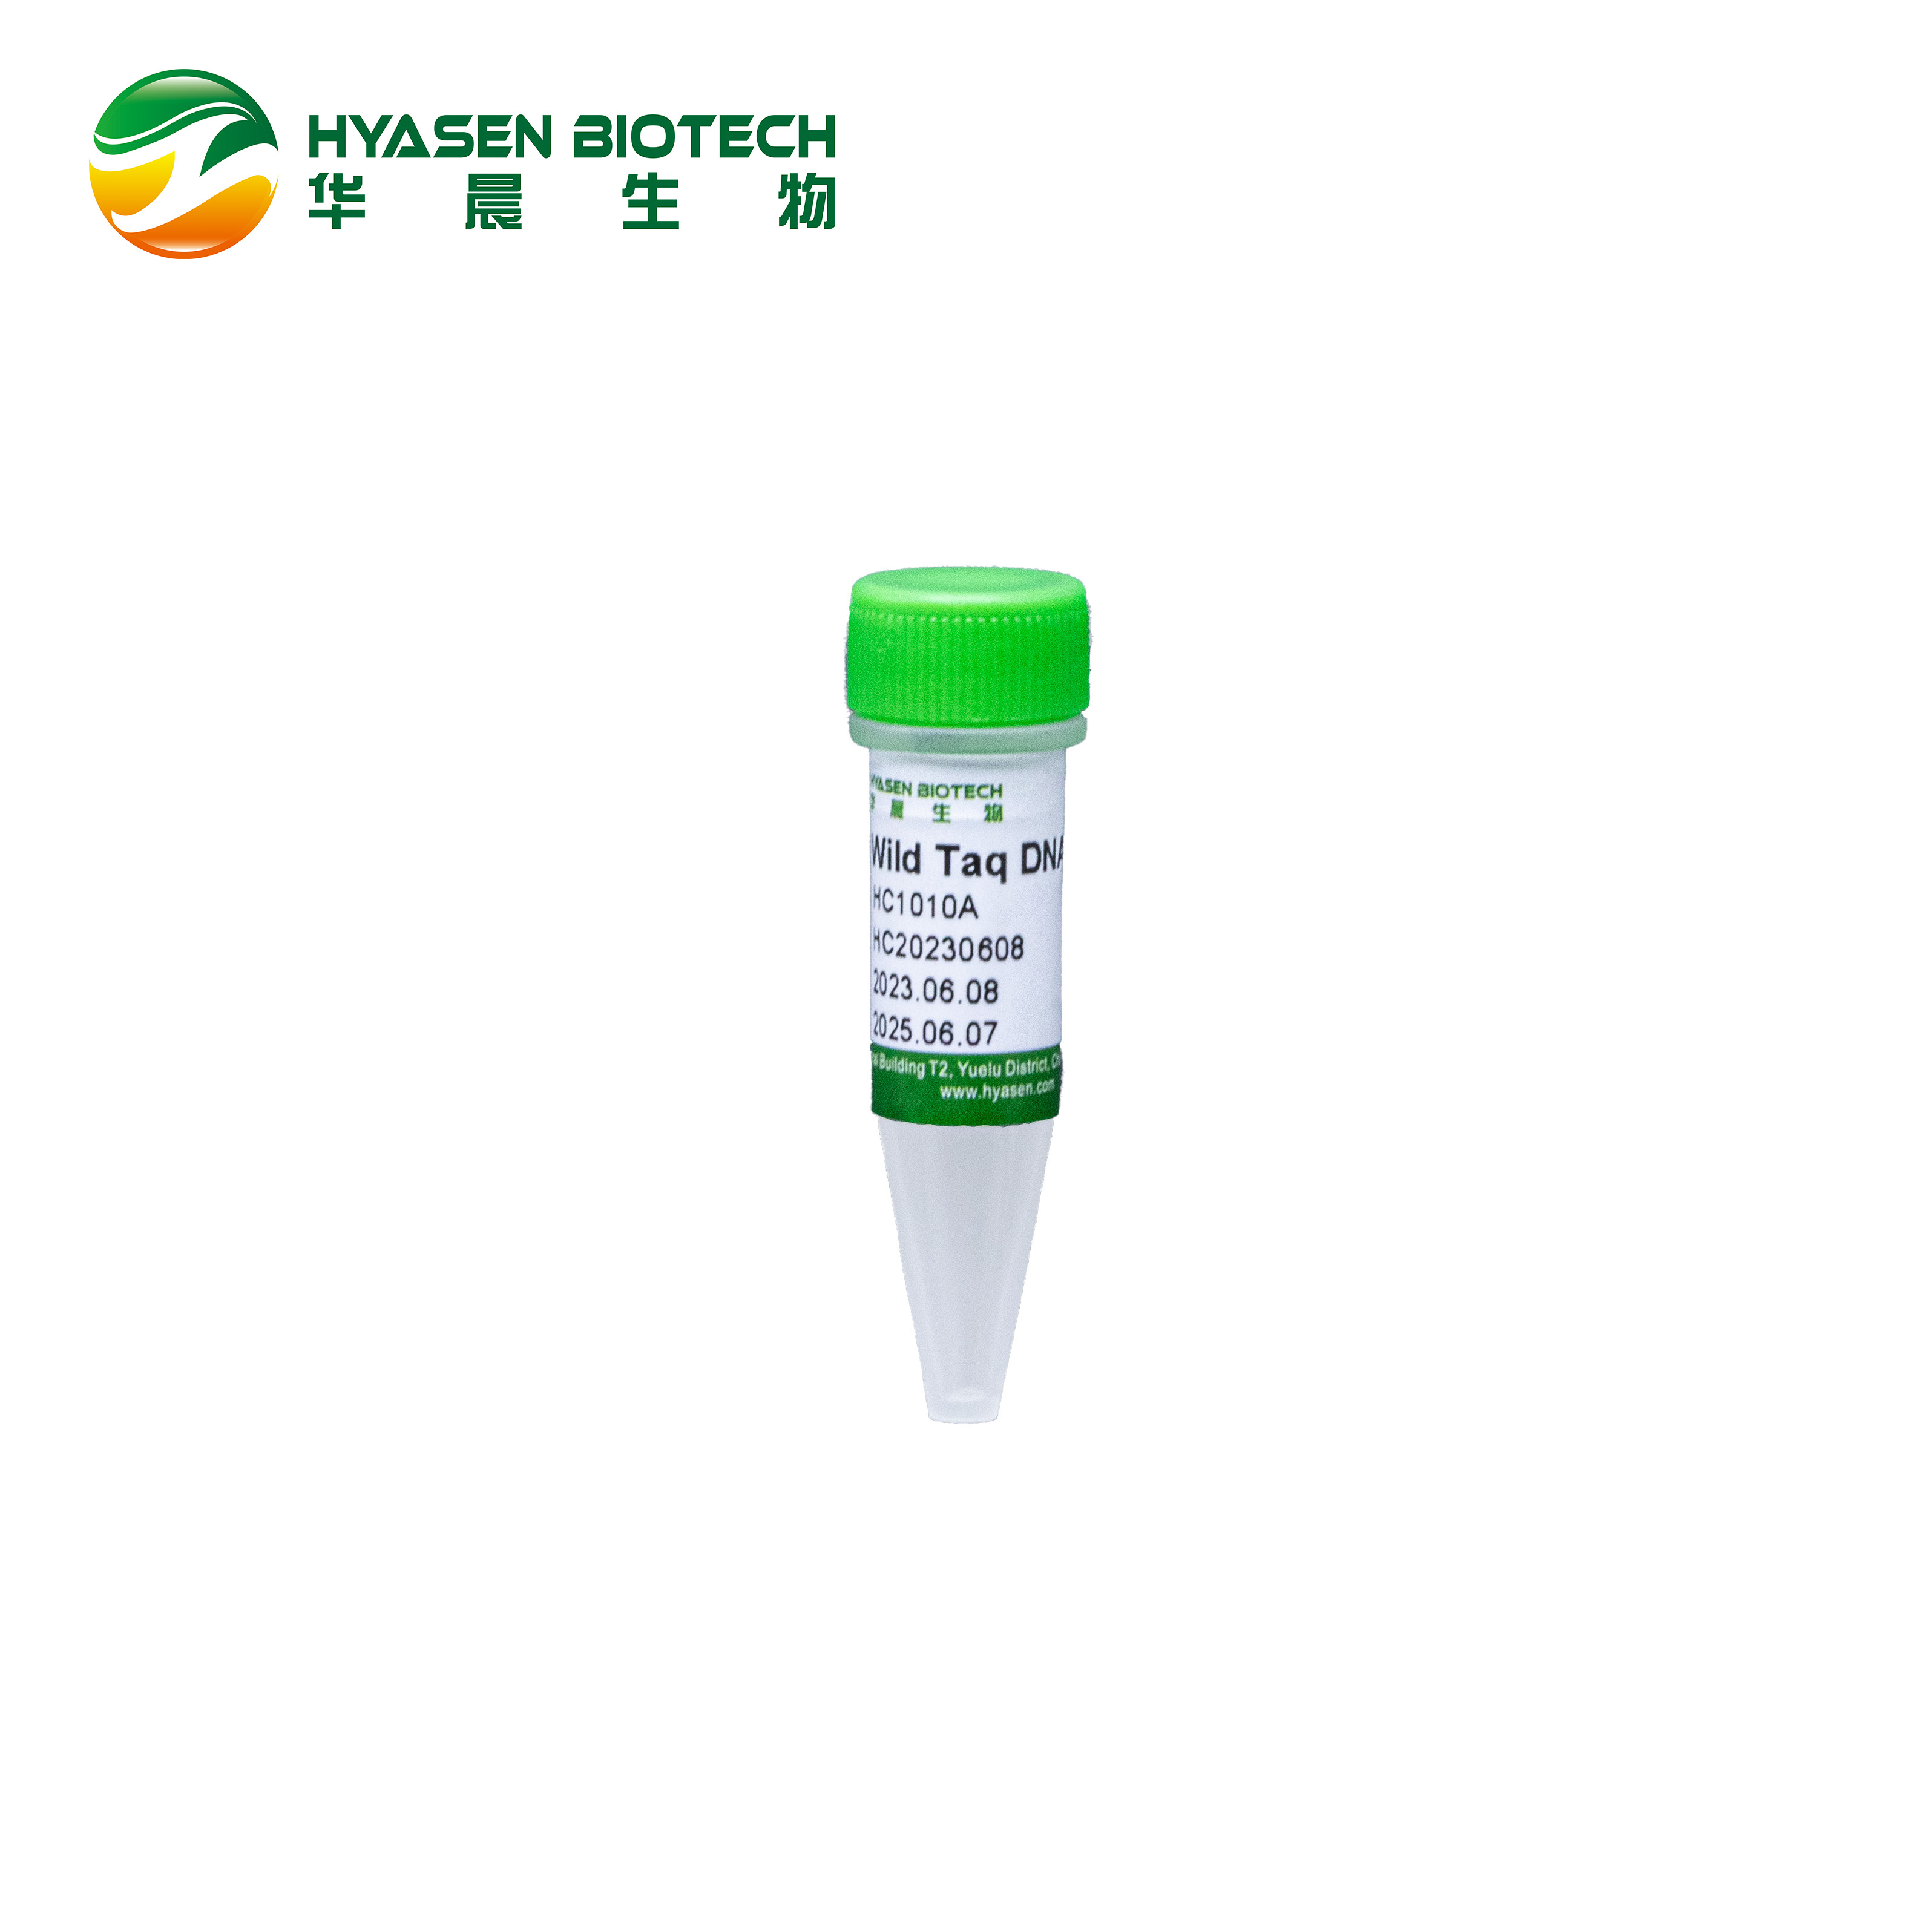 ওয়াইল্ড তাক ডিএনএ পলিমারেজ HC1010A বৈশিষ্ট্যযুক্ত চিত্র